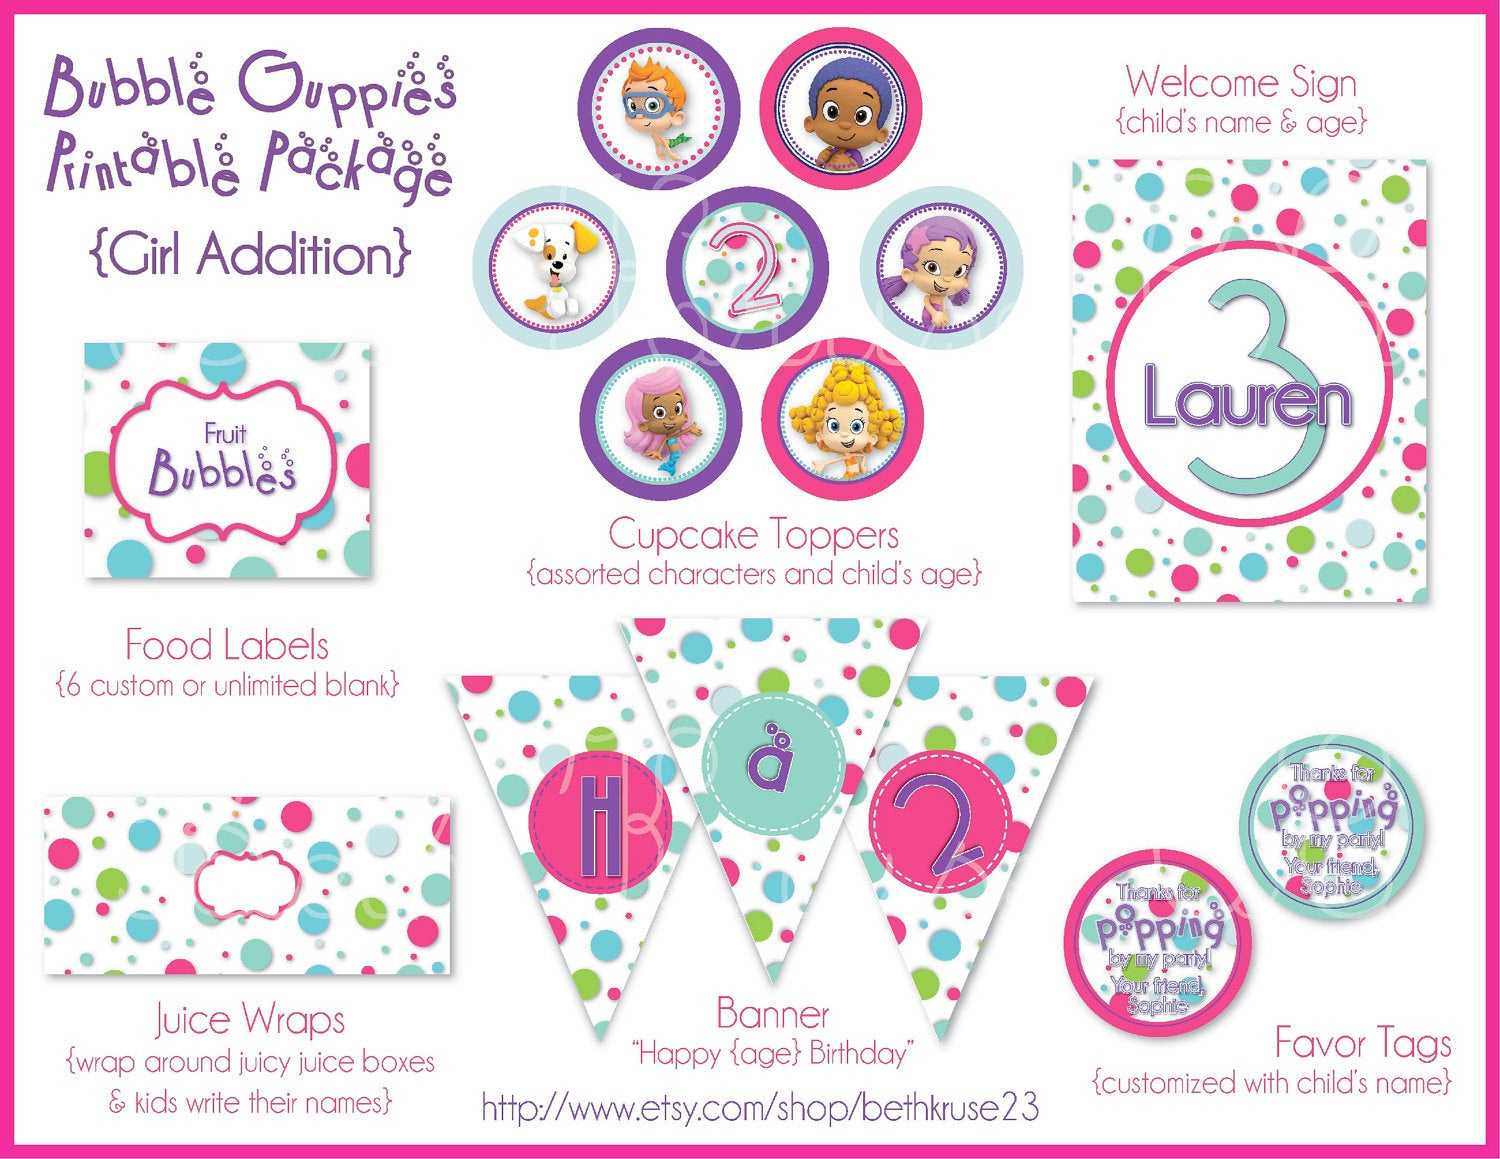 Free Bubble Guppies Invitation Template ] – Bubble Guppies With Regard To Bubble Guppies Birthday Banner Template